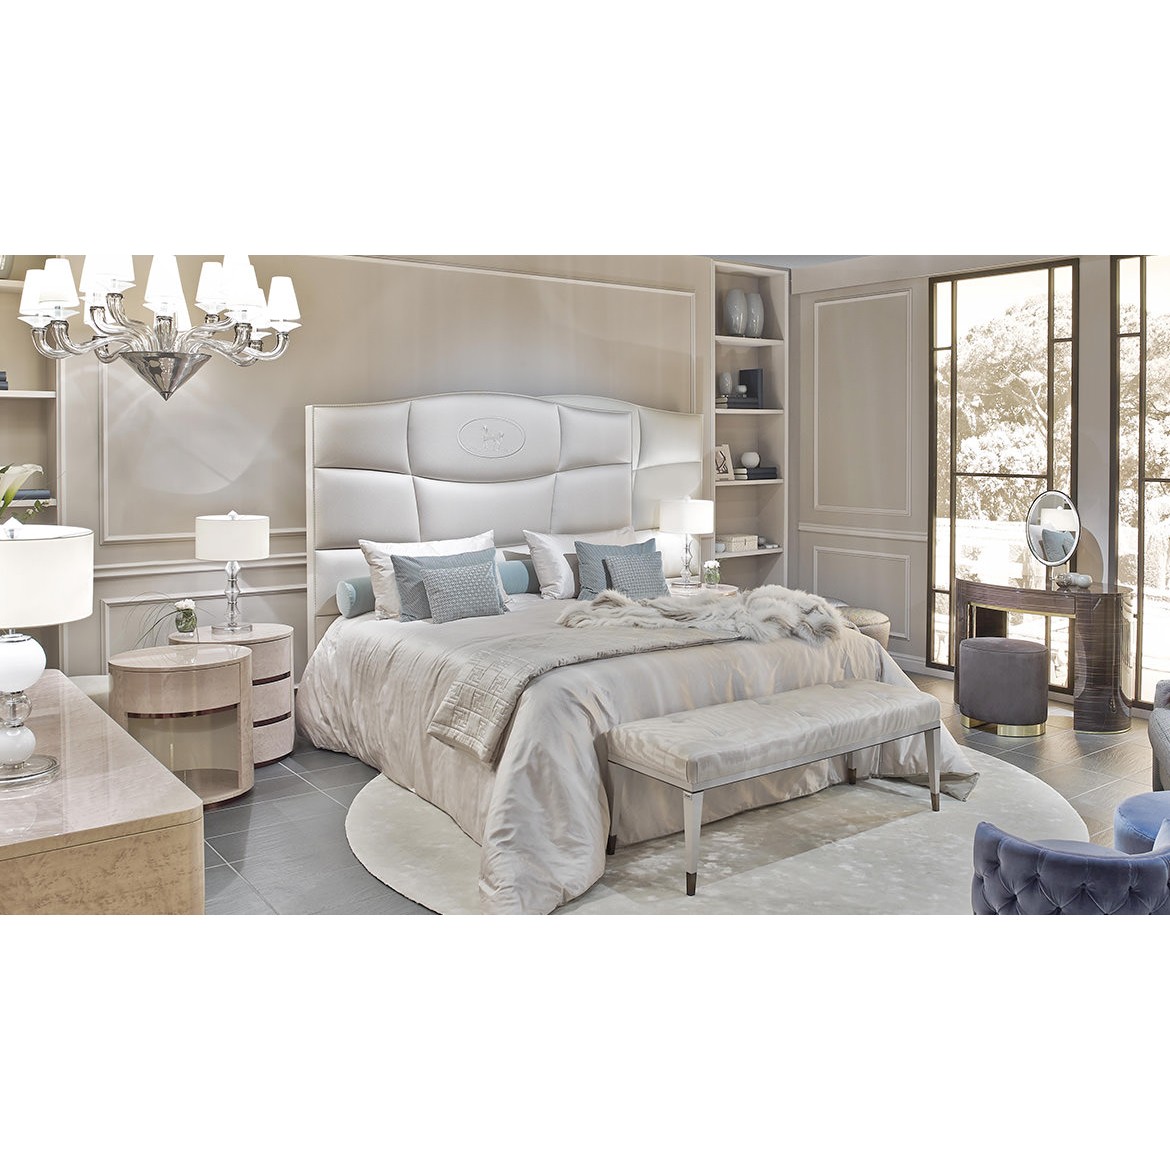 Кровать George Bed, дизайн Fendi Casa